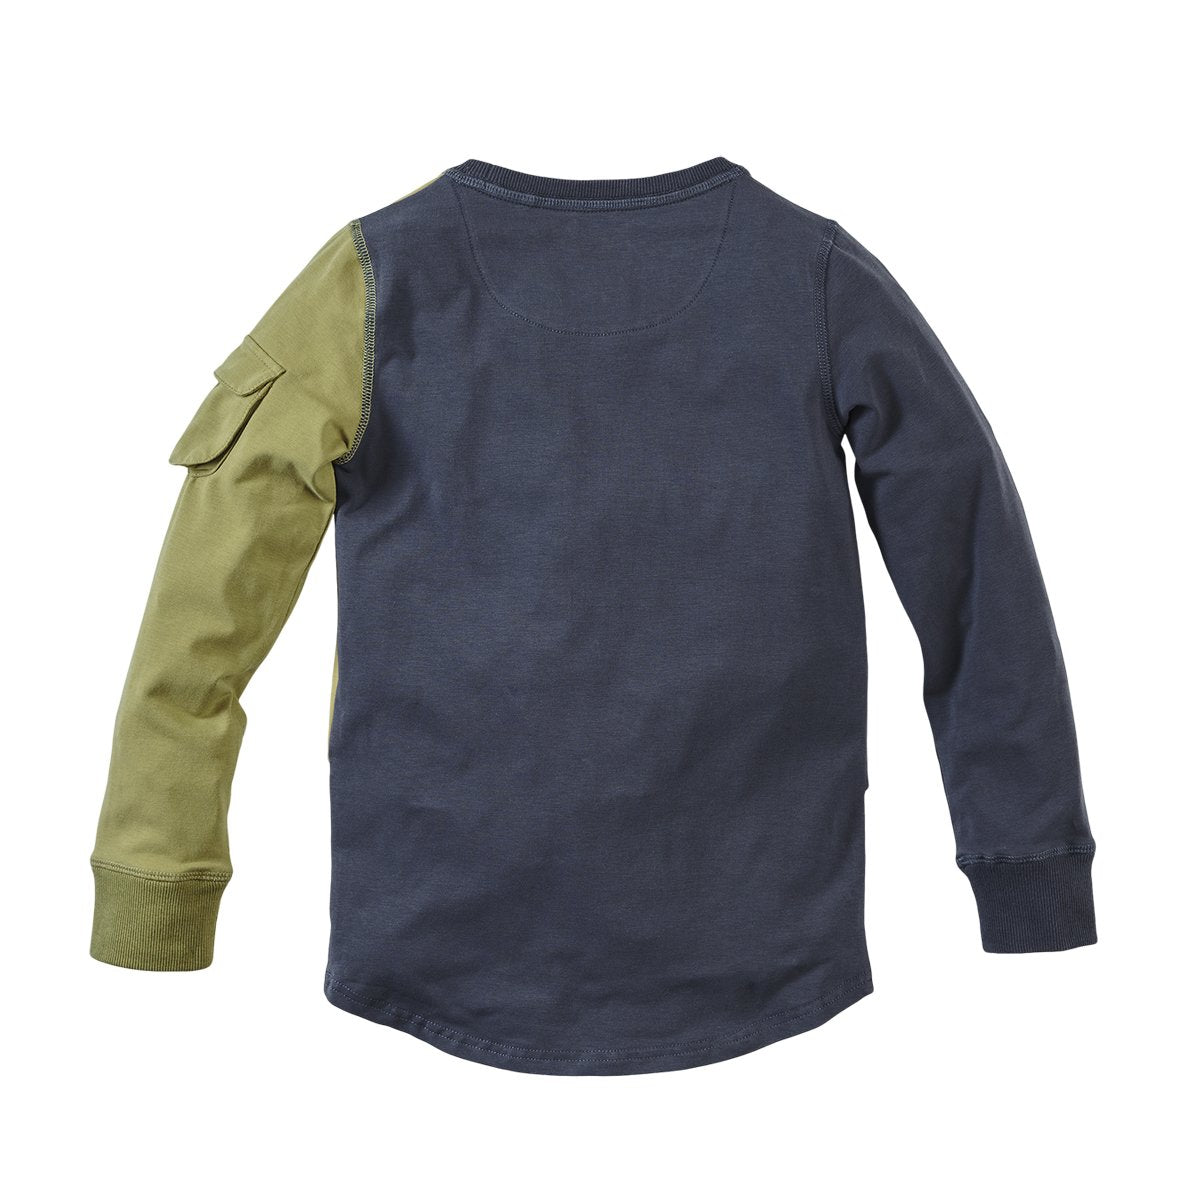 Jongens Sweater Jayden van Z8 in de kleur Misty moss in maat 140/146.